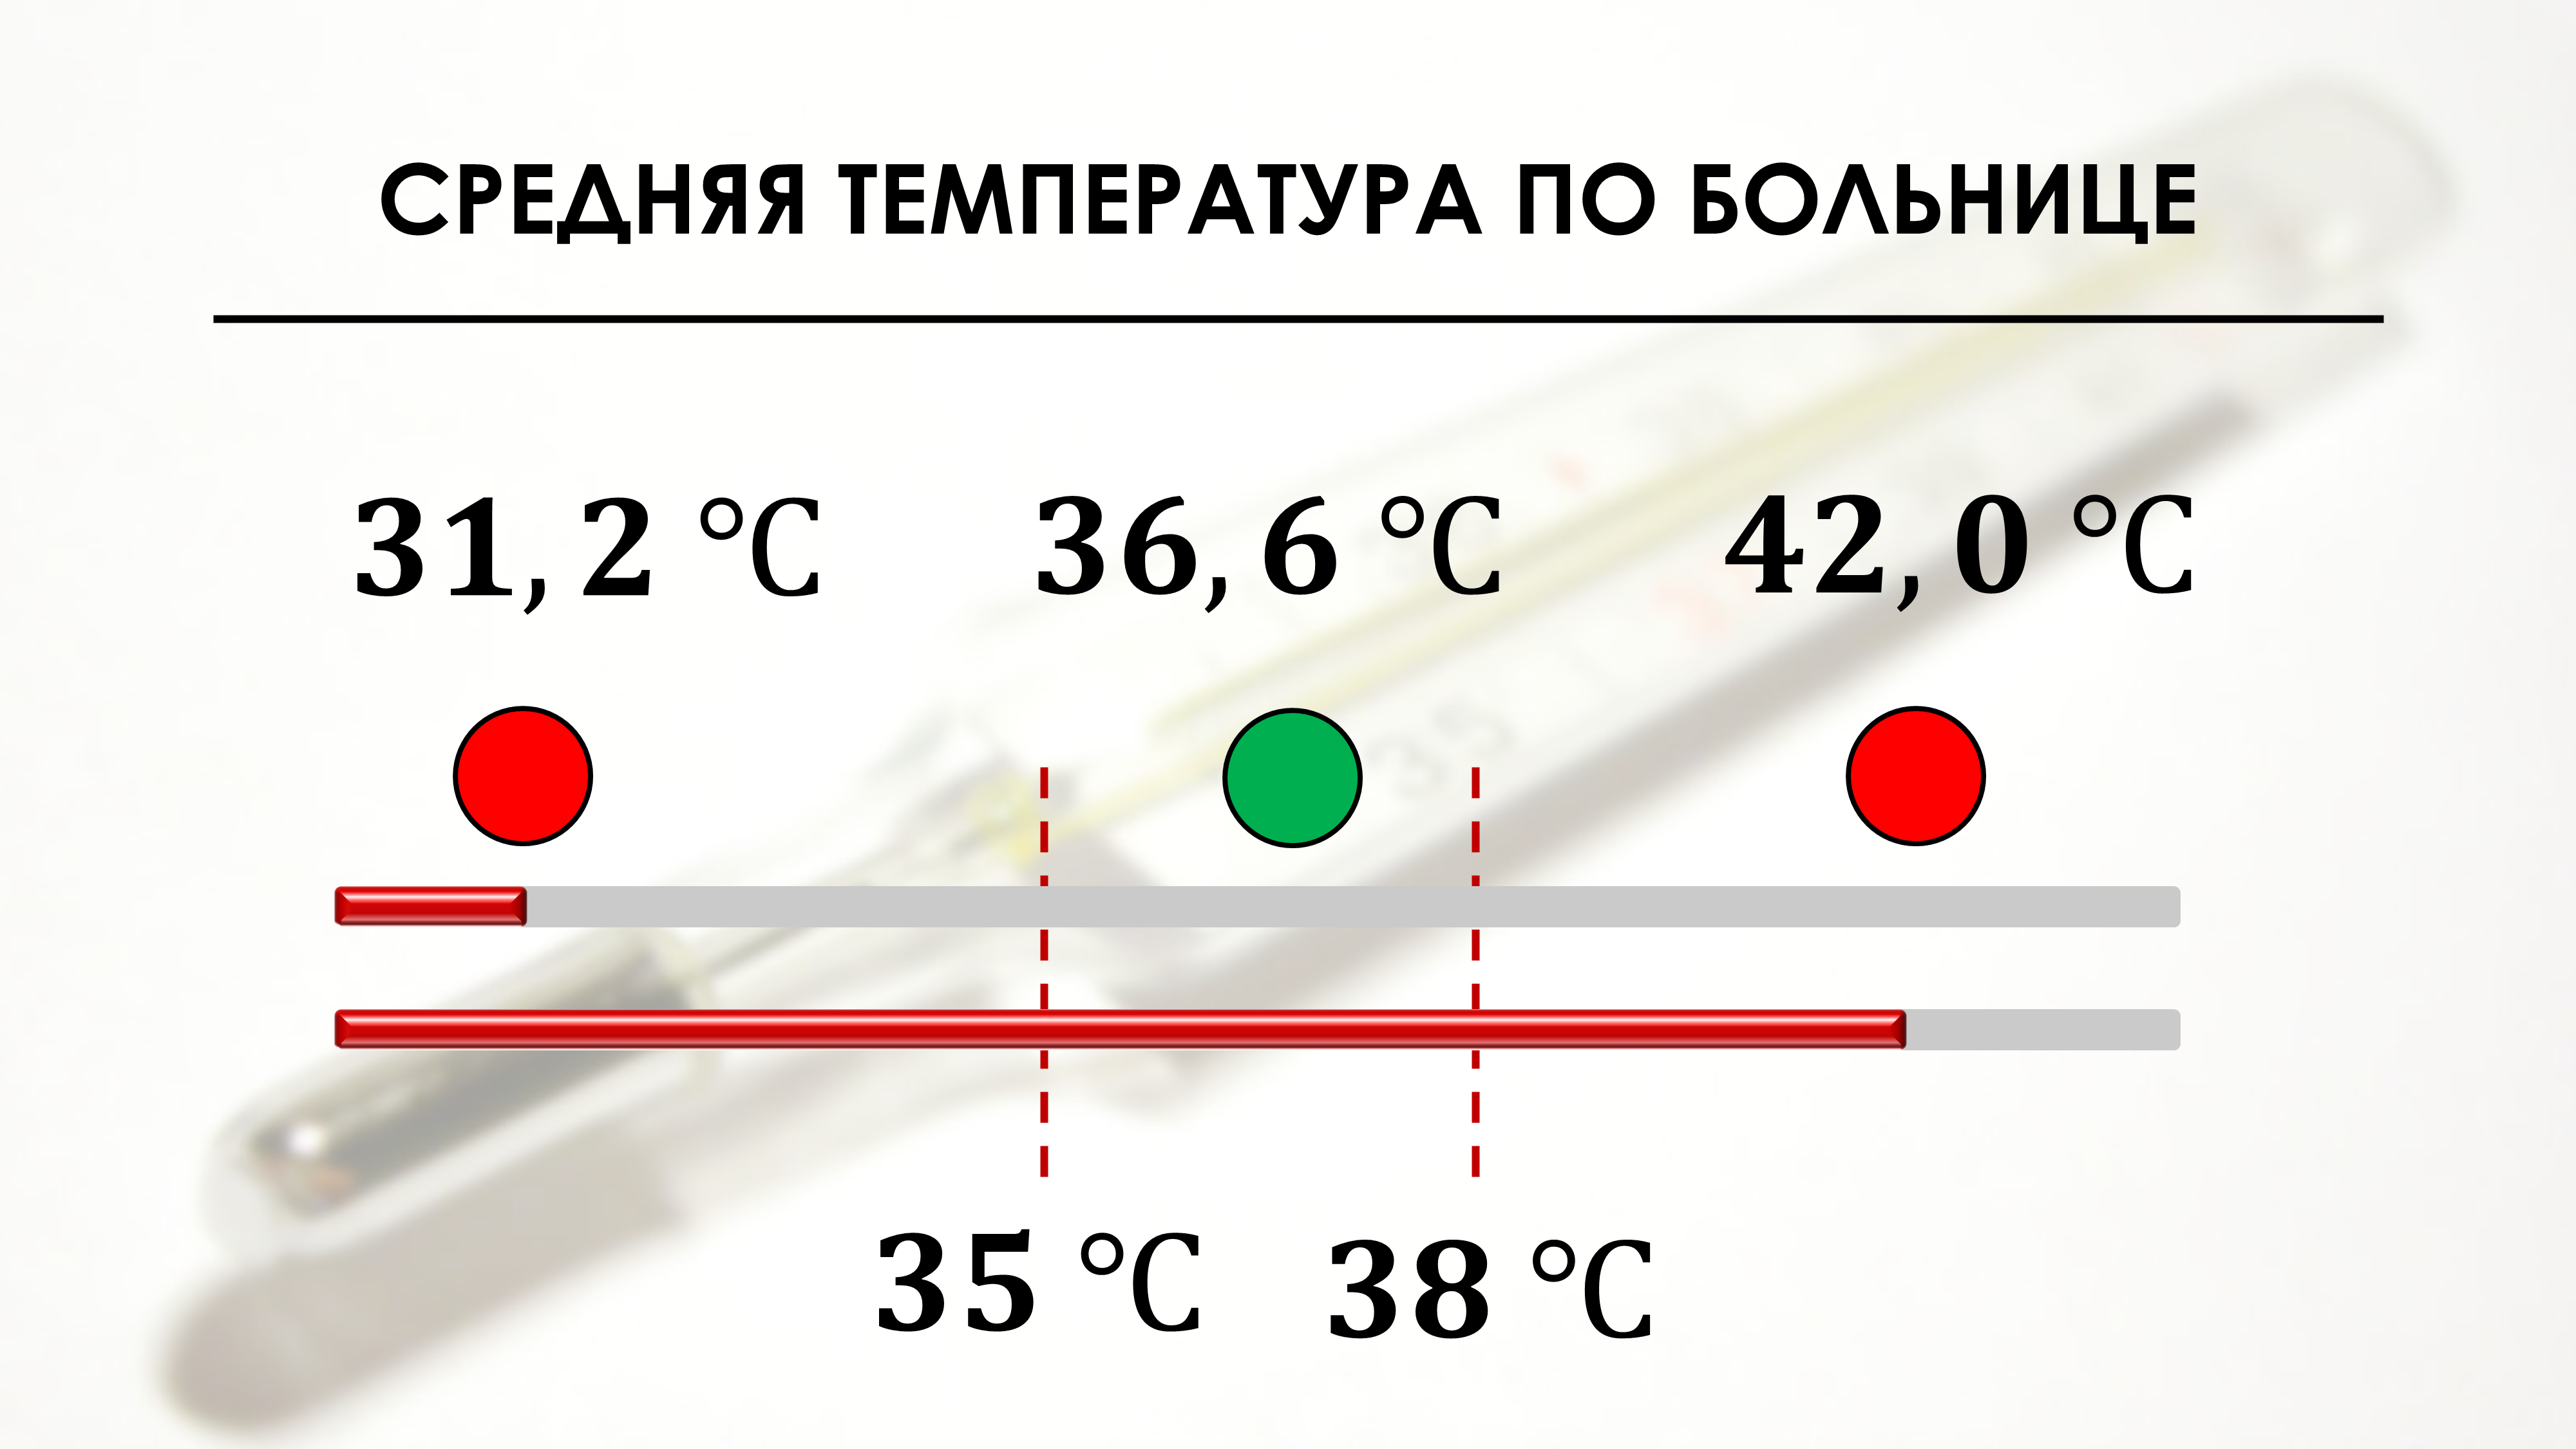 Средняя температура по больнице 36,6 °C